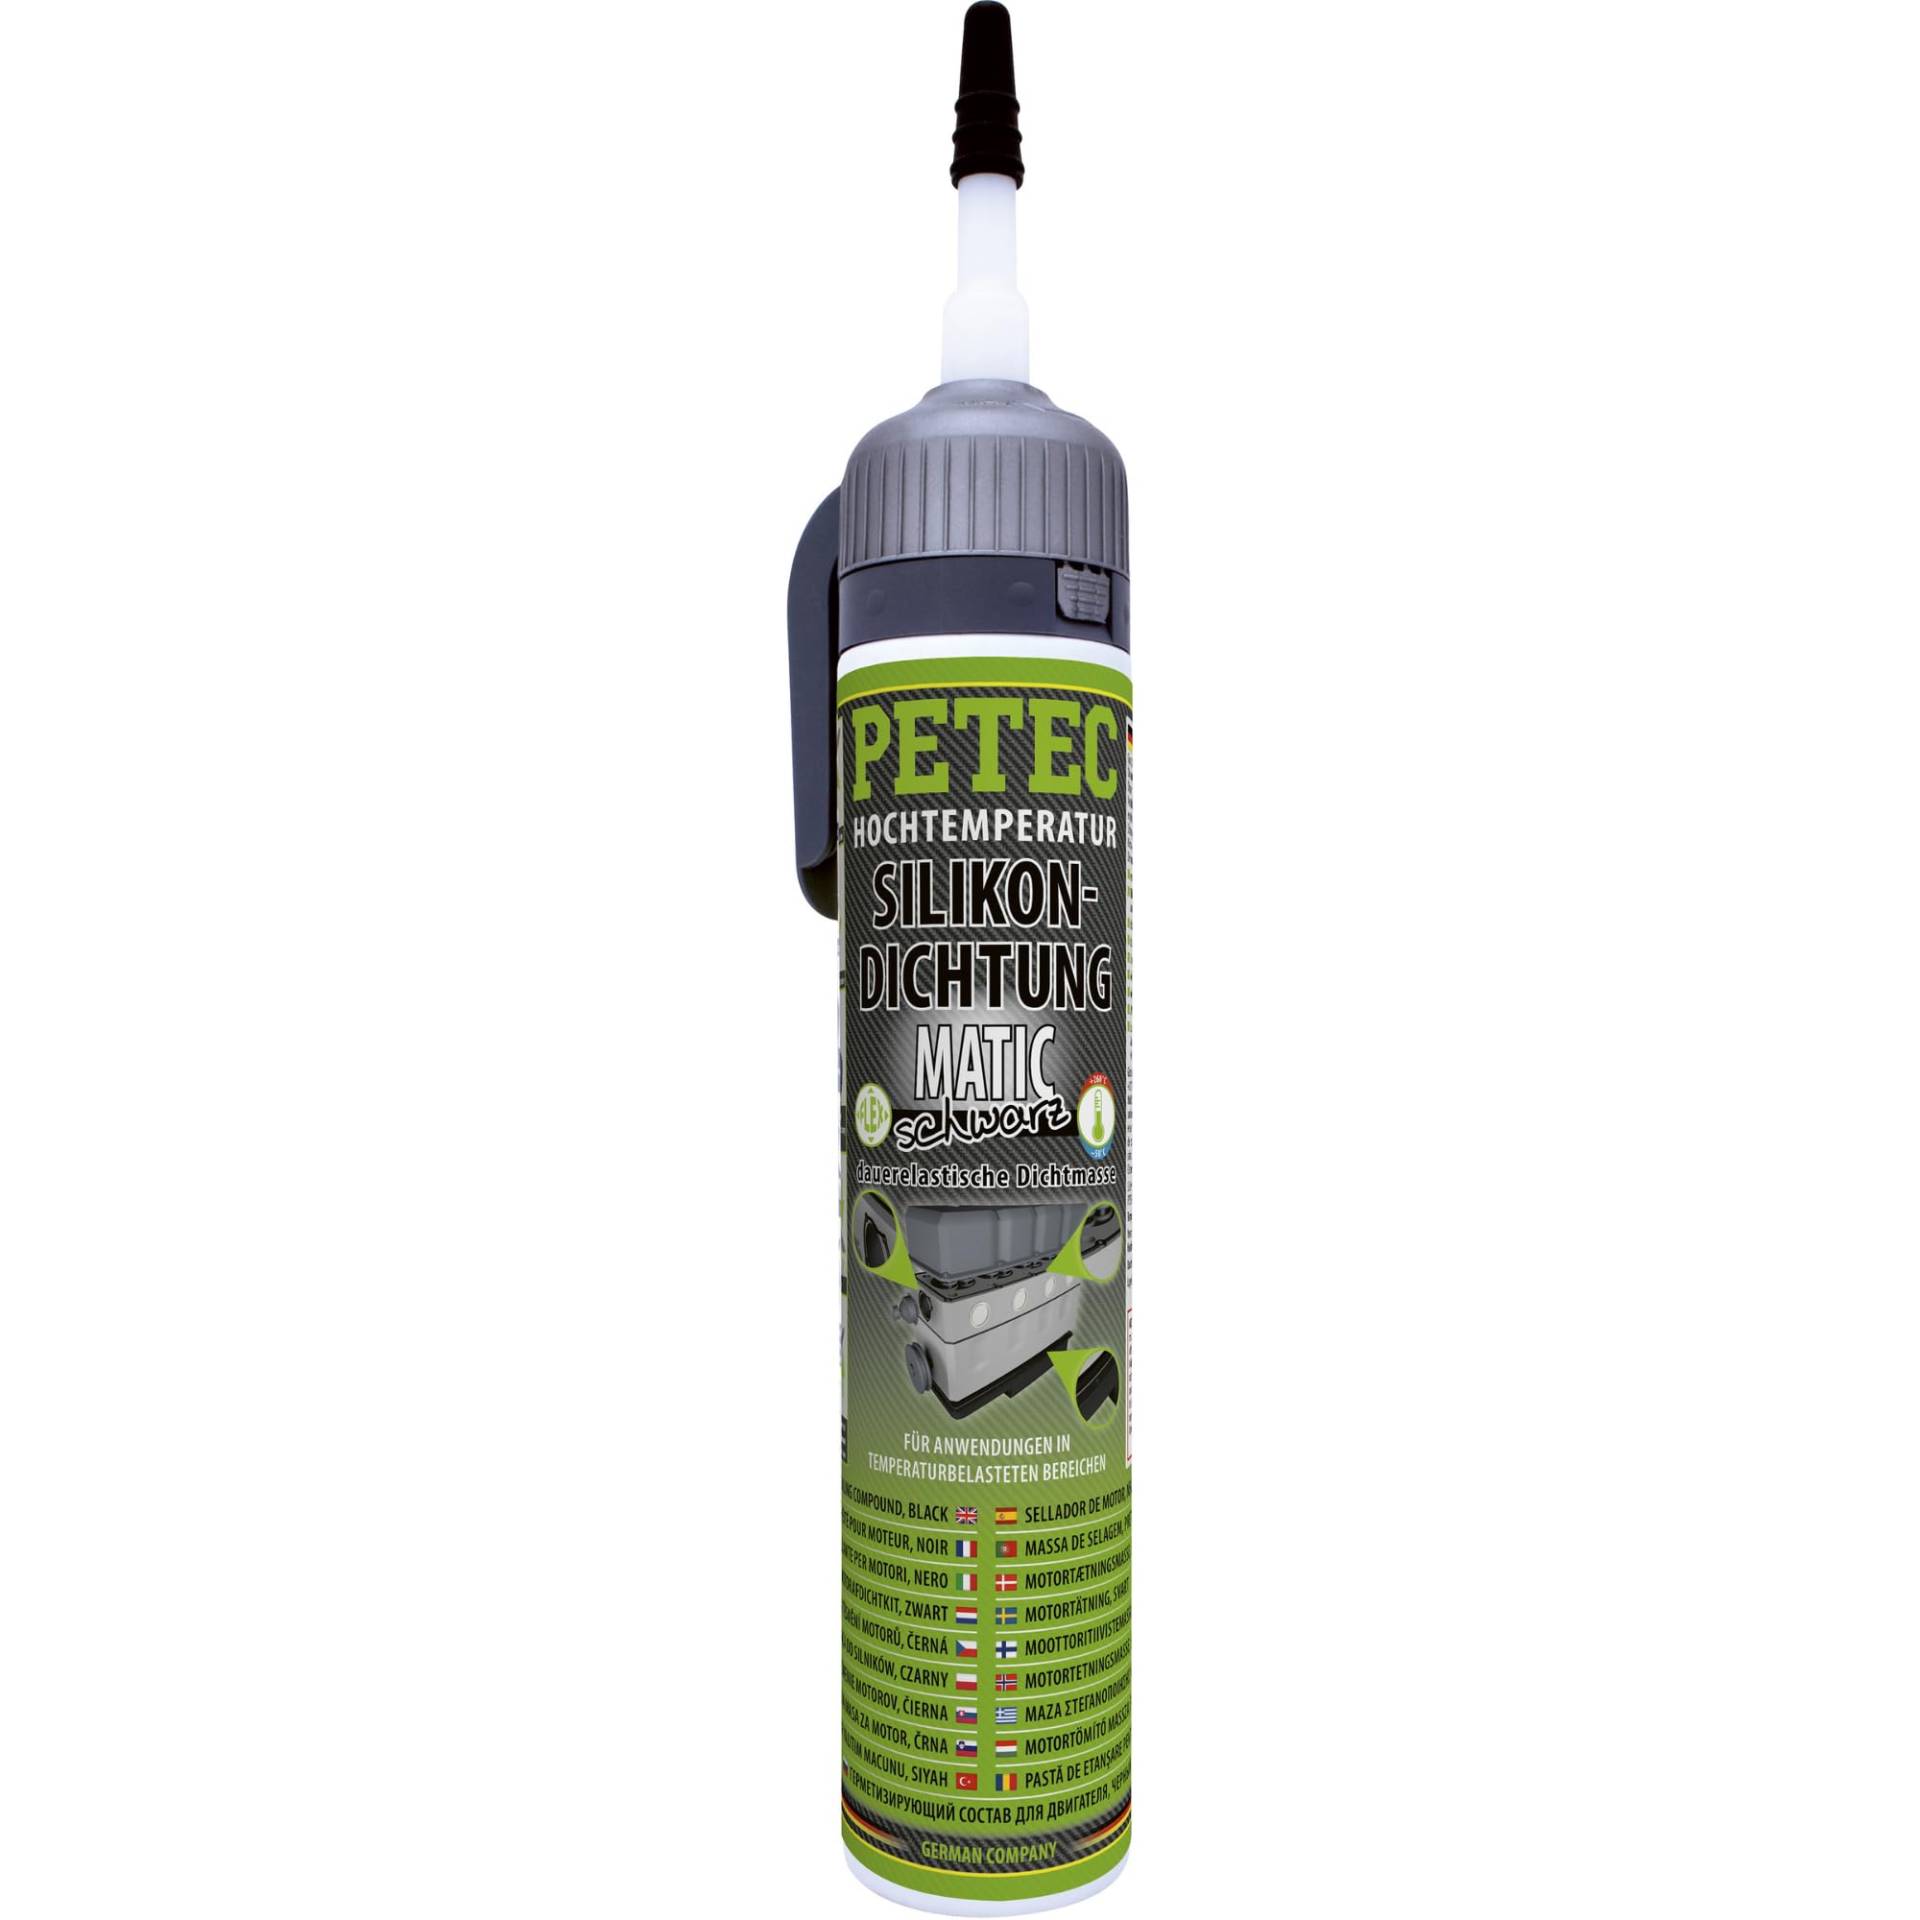 PETEC Hochtemperatur Silikon Dichtung MATIC in schwarz 200 ml Automatikdose Motor Dichtmasse KFZ & Wohnwagen Dichtmittel für Metall Kunststoff 97720 von PETEC